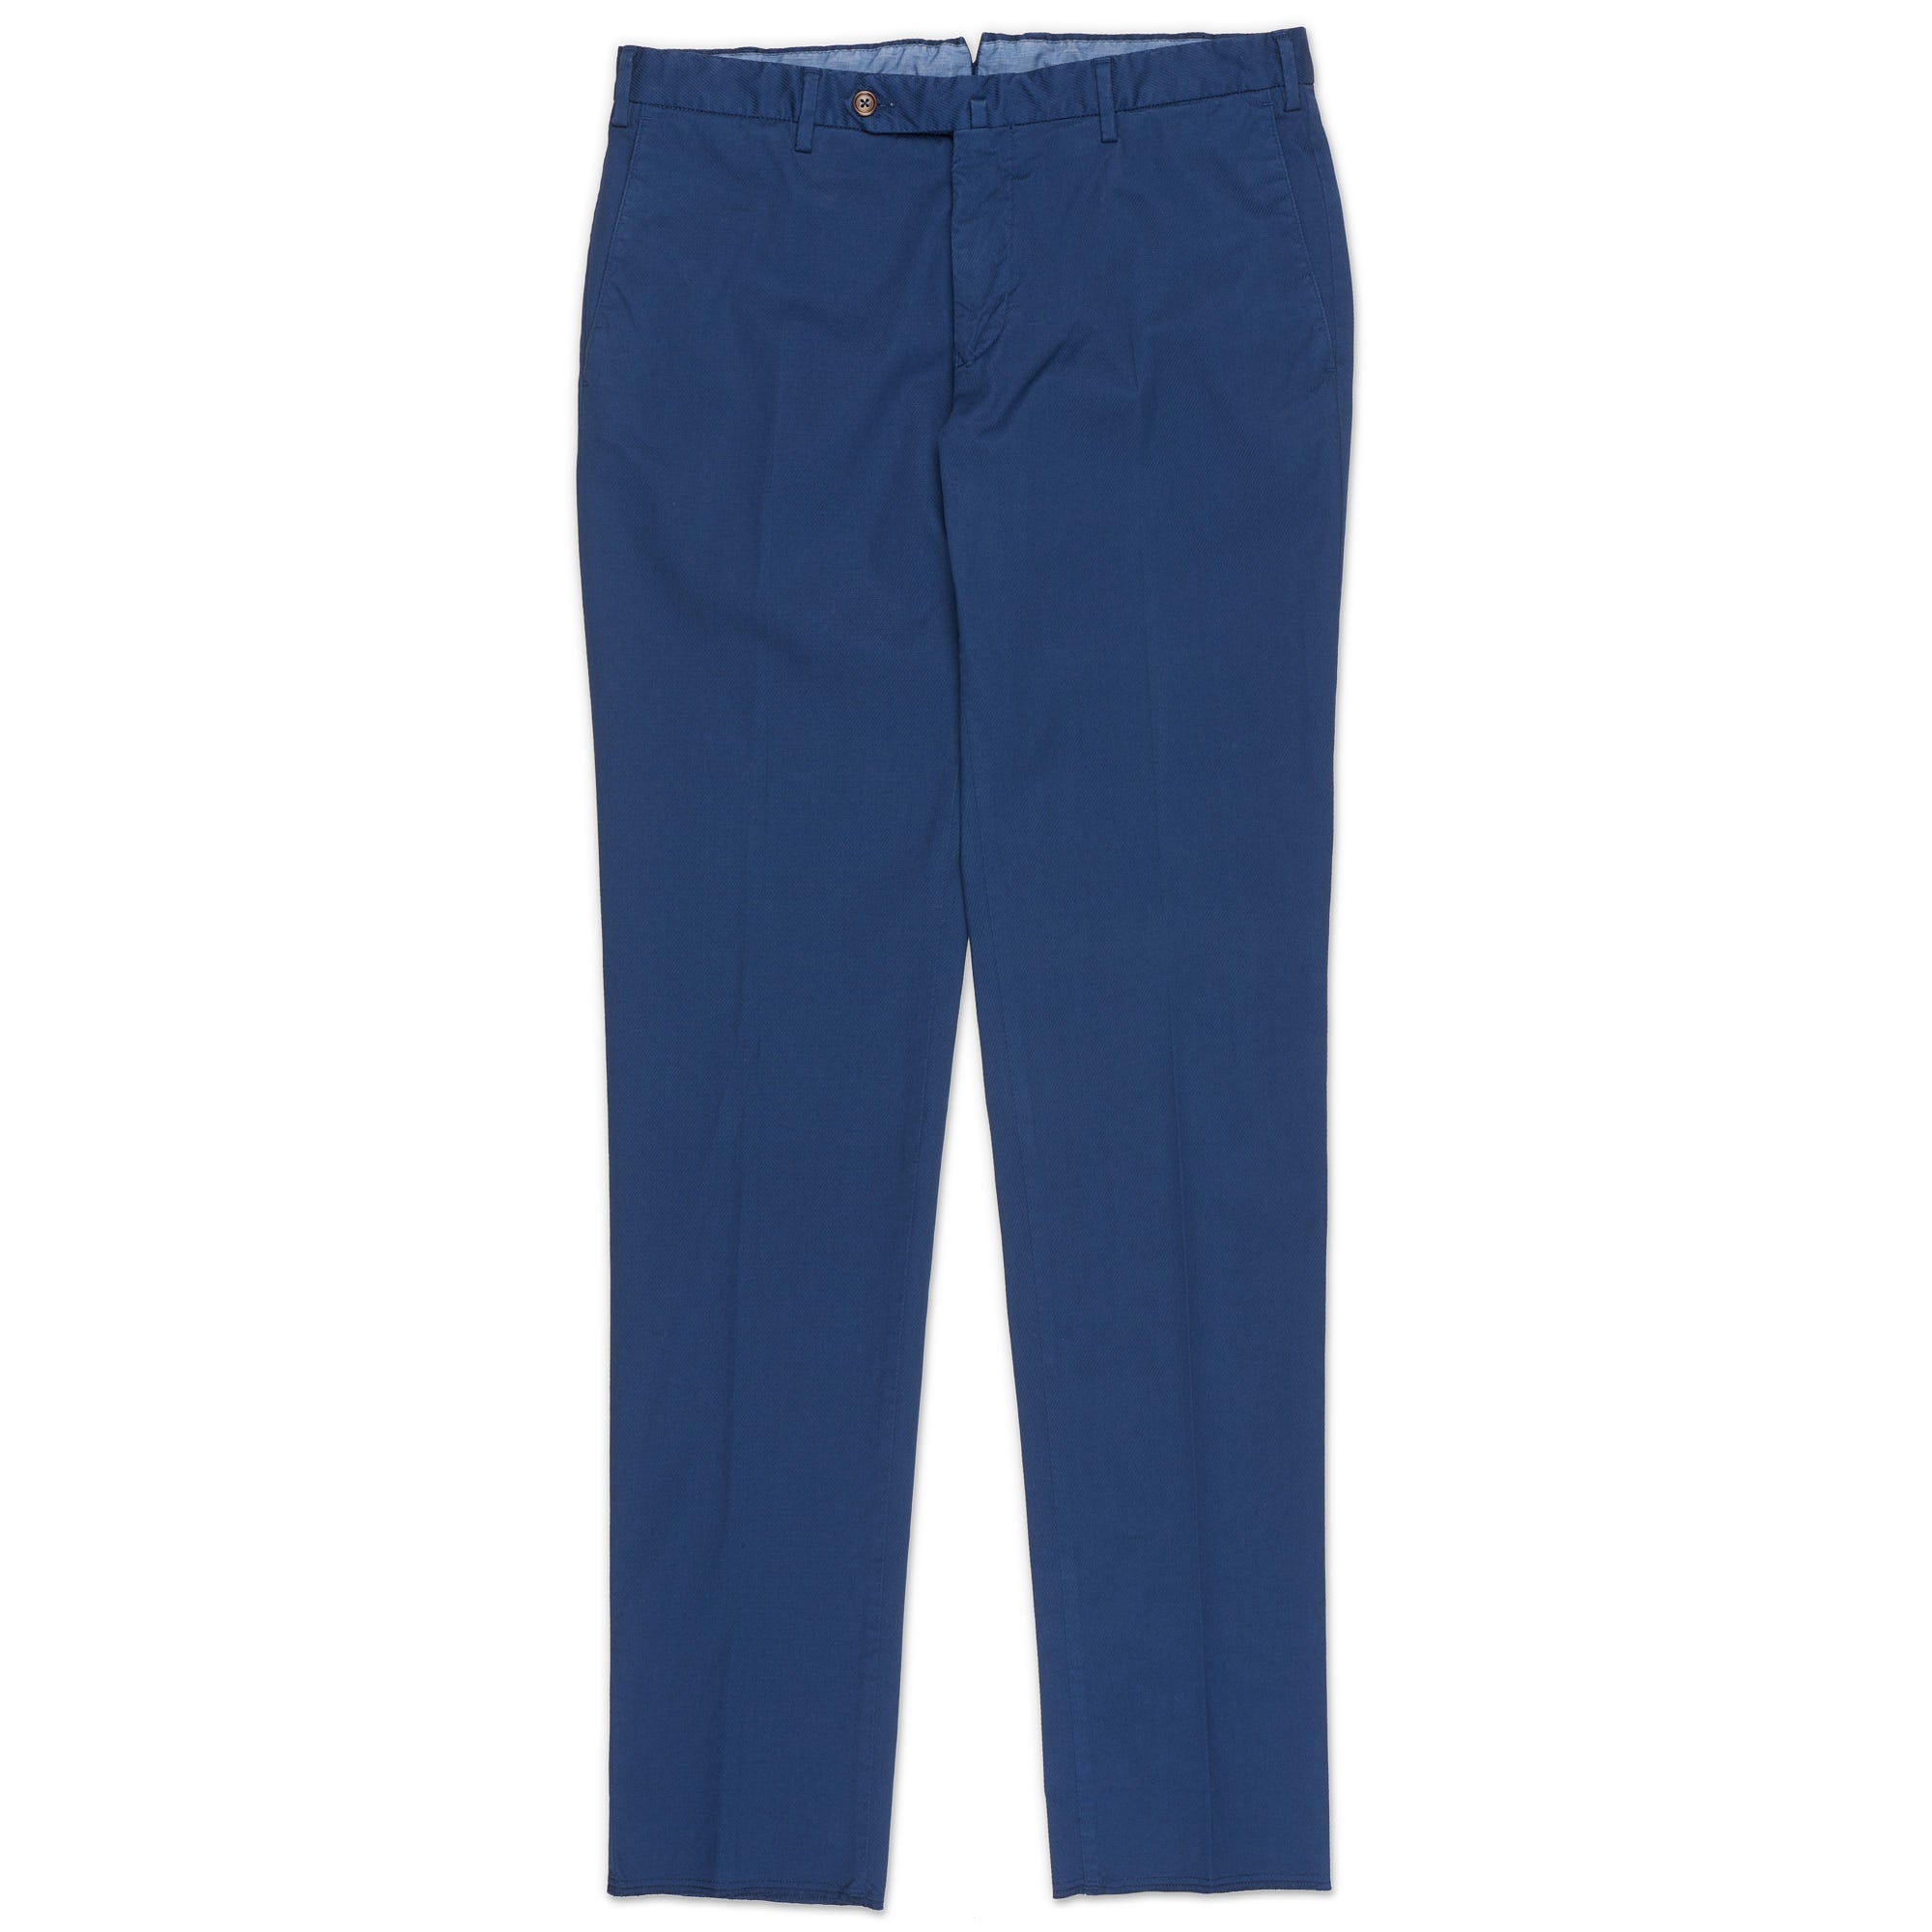 INCOTEX (Slowear) Blue Twill Cotton Stretch Flat Front Pants 54 NEW 38 Slim Fit INCOTEX